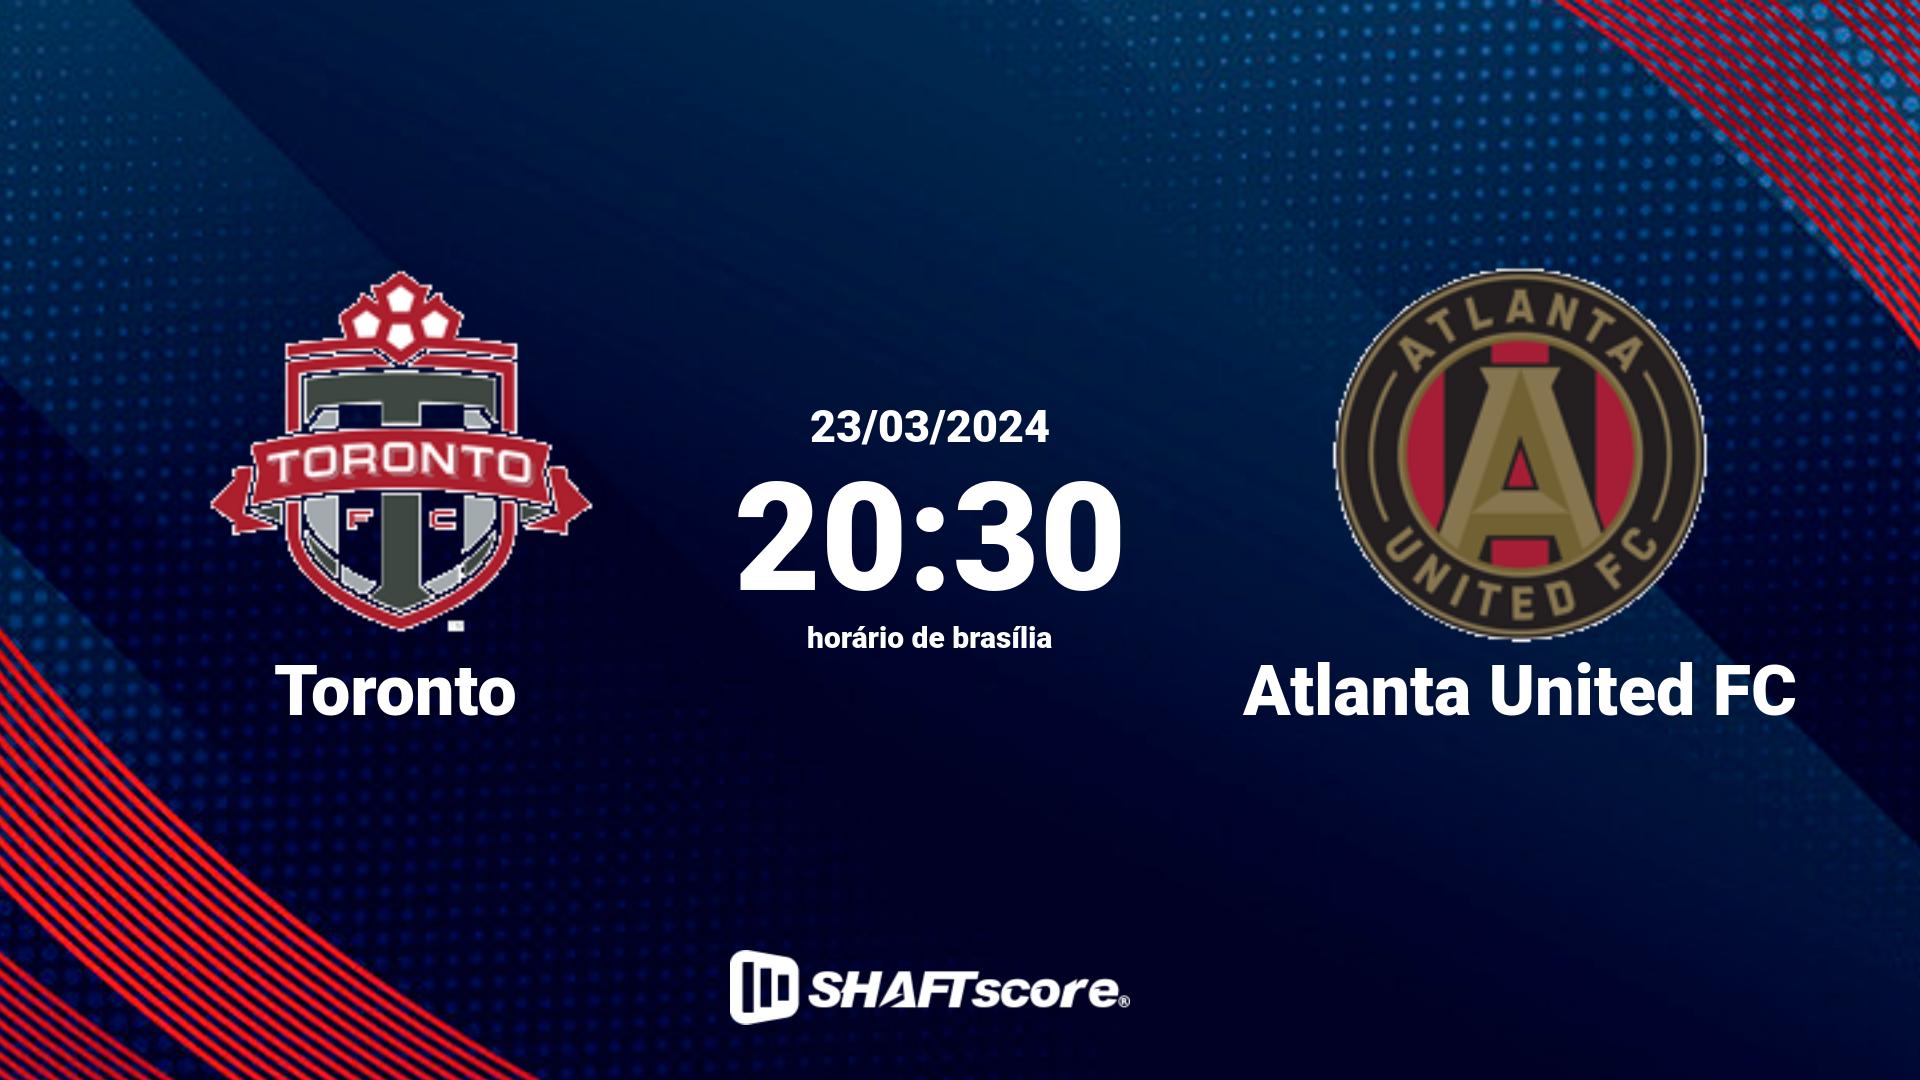 Estatísticas do jogo Toronto vs Atlanta United FC 23.03 20:30